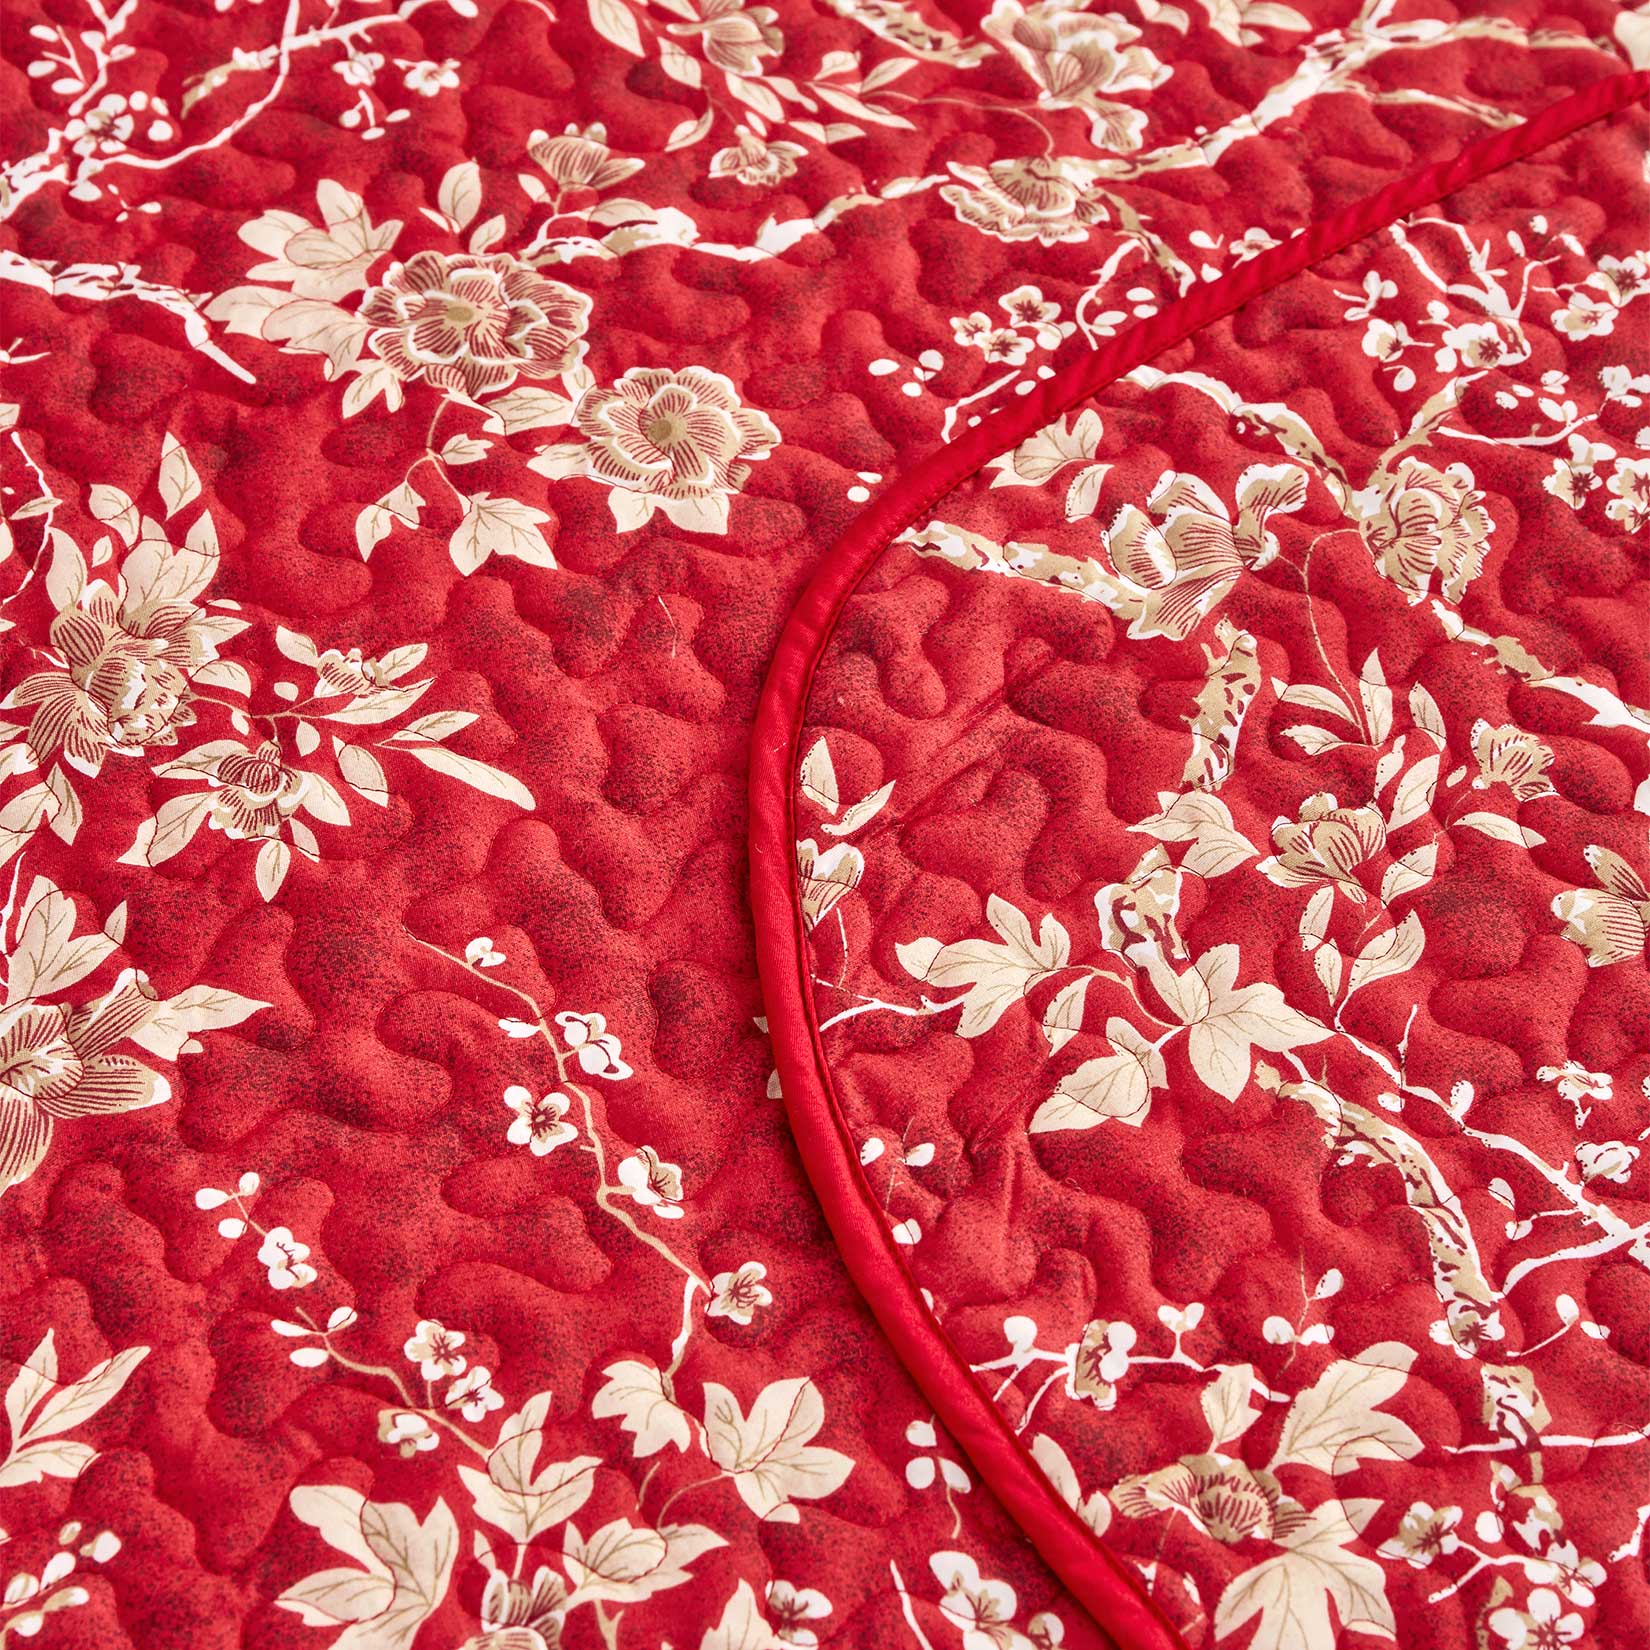 Red Floral Microfiber Quilt Set